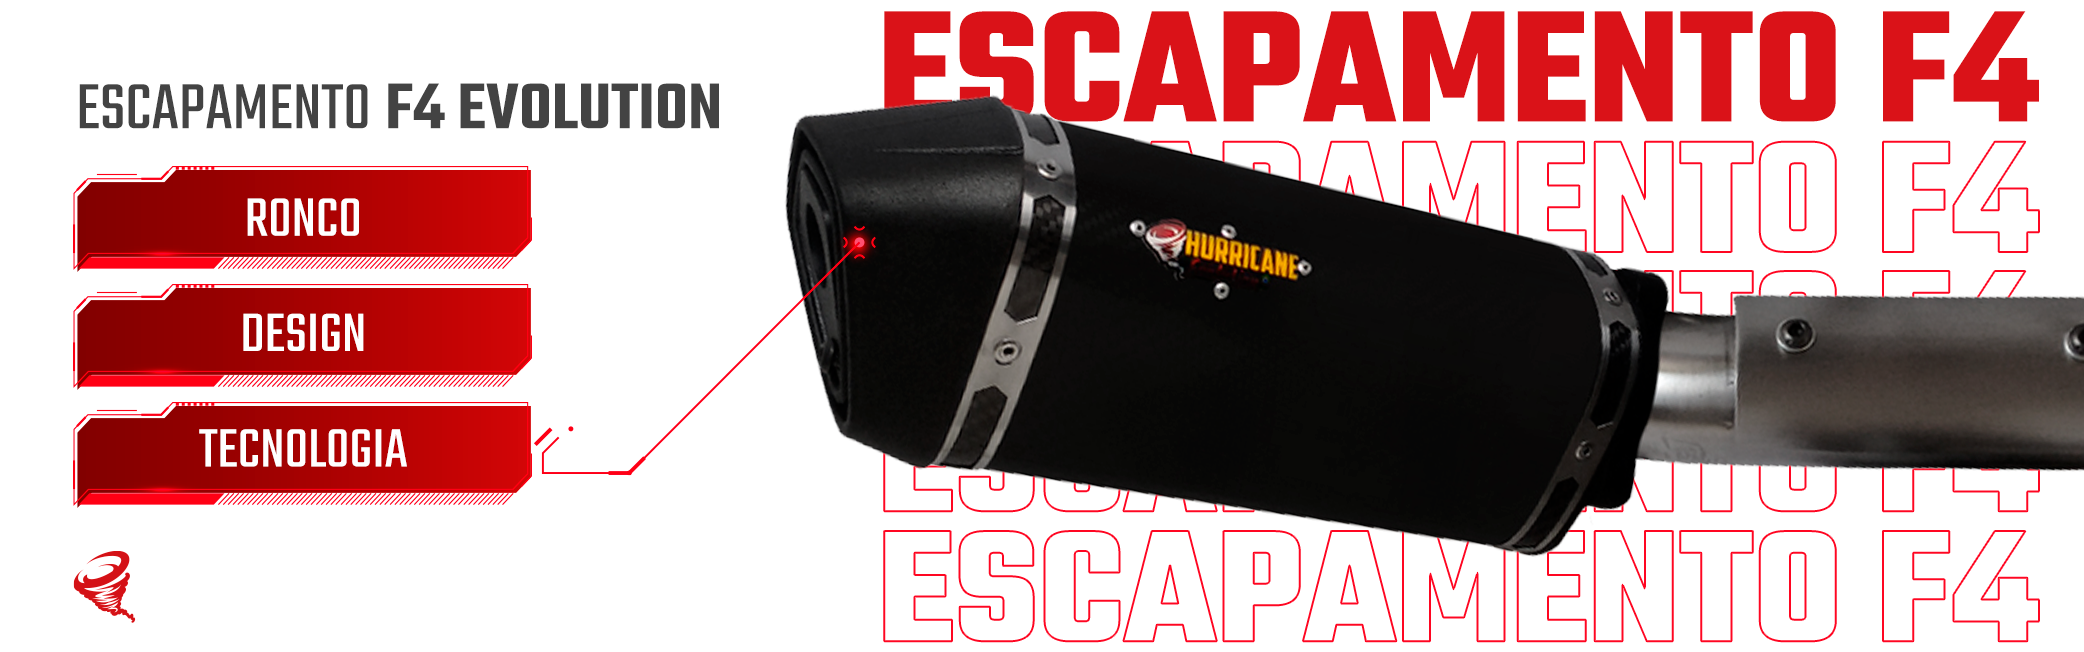 Imagem do slide Escapamento F4 Evolution - 